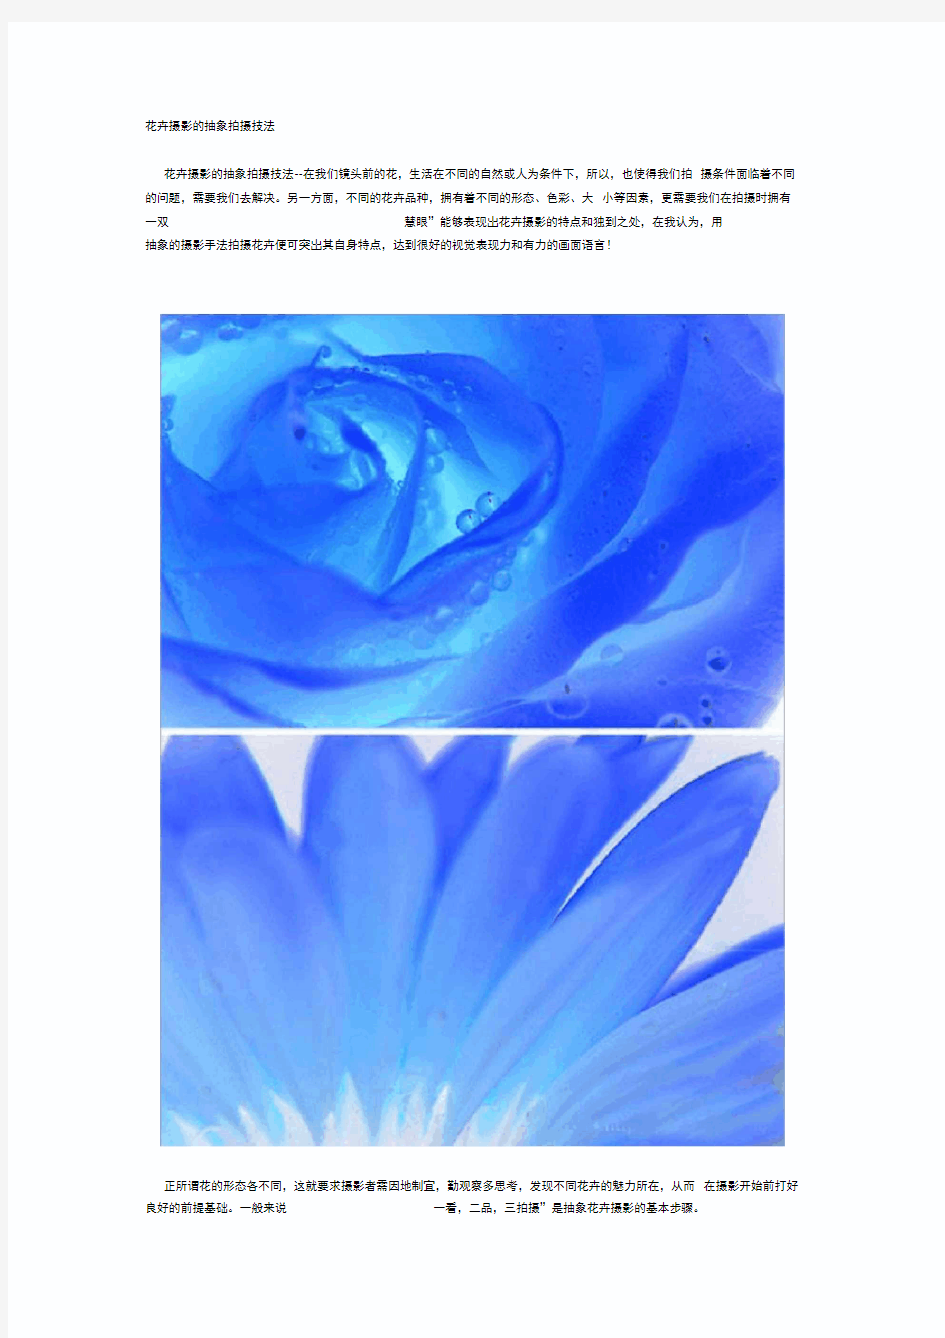 花卉摄影的抽象拍摄技法